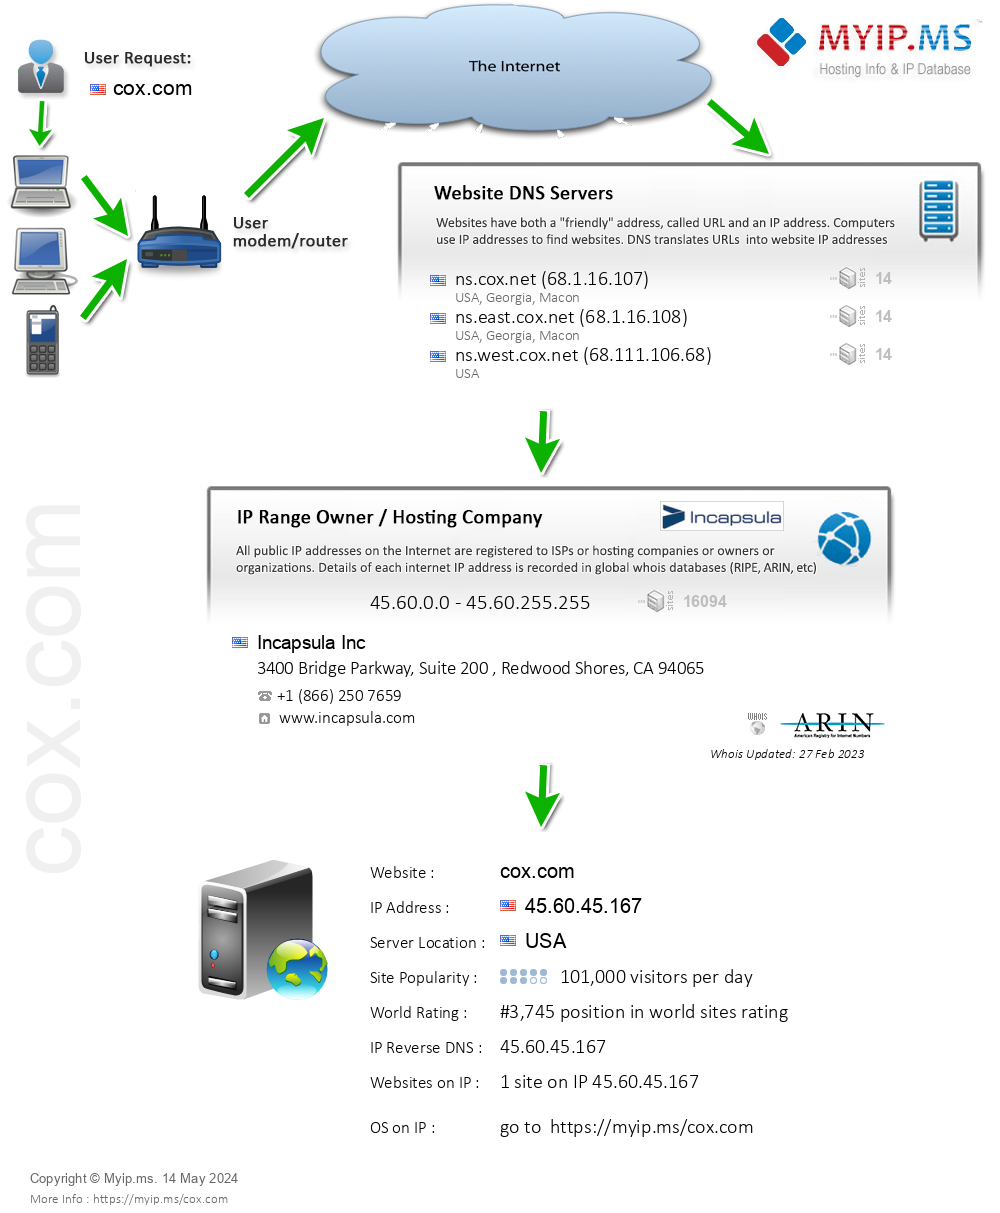 Cox.com - Website Hosting Visual IP Diagram